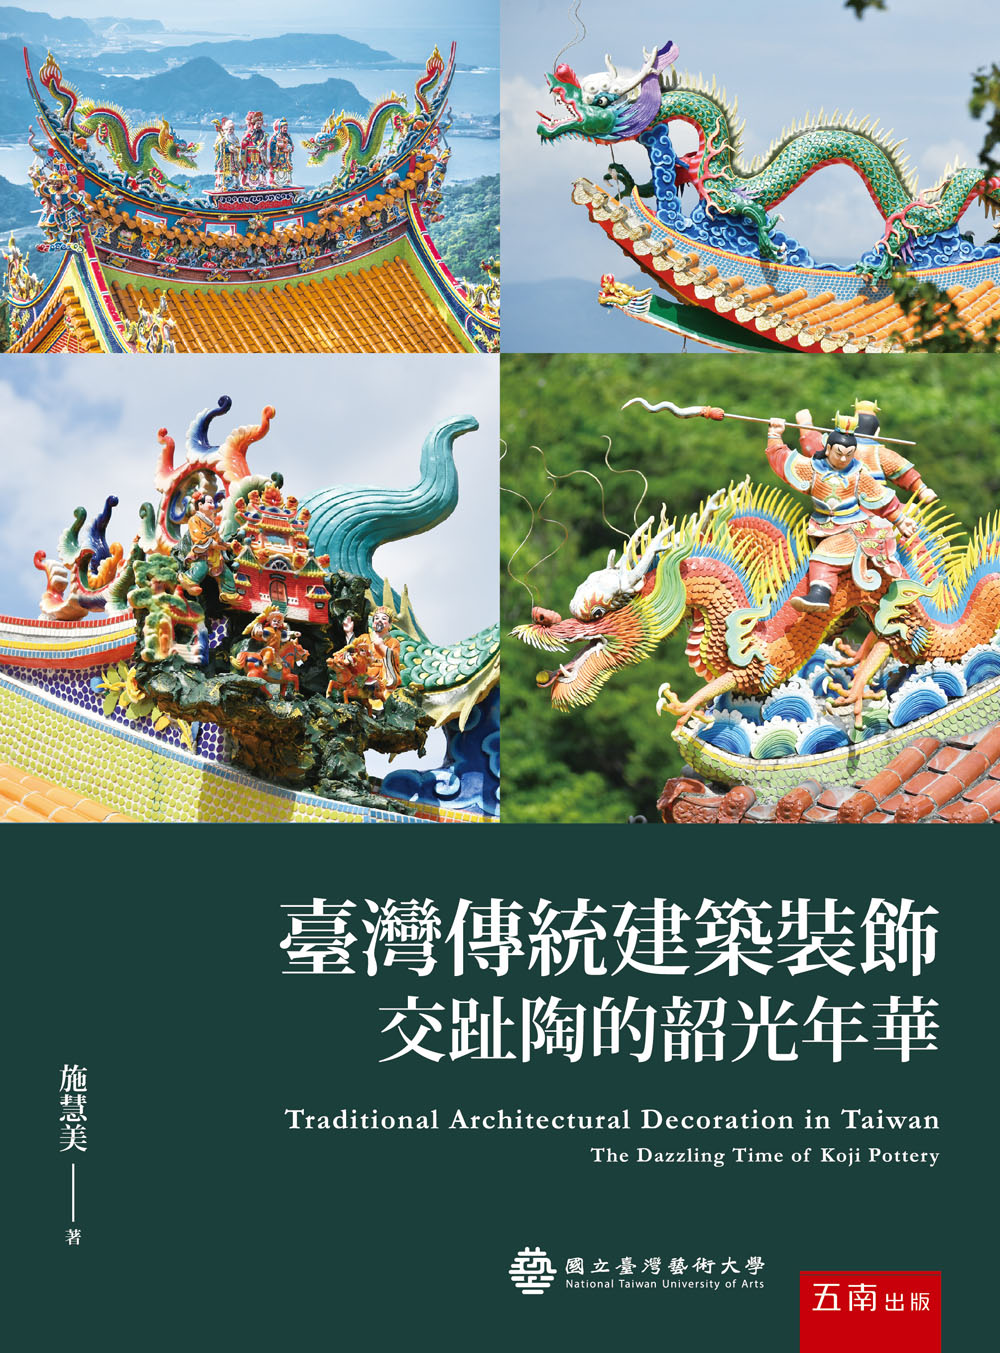 臺灣傳統建築裝飾—交趾陶的韶光年華